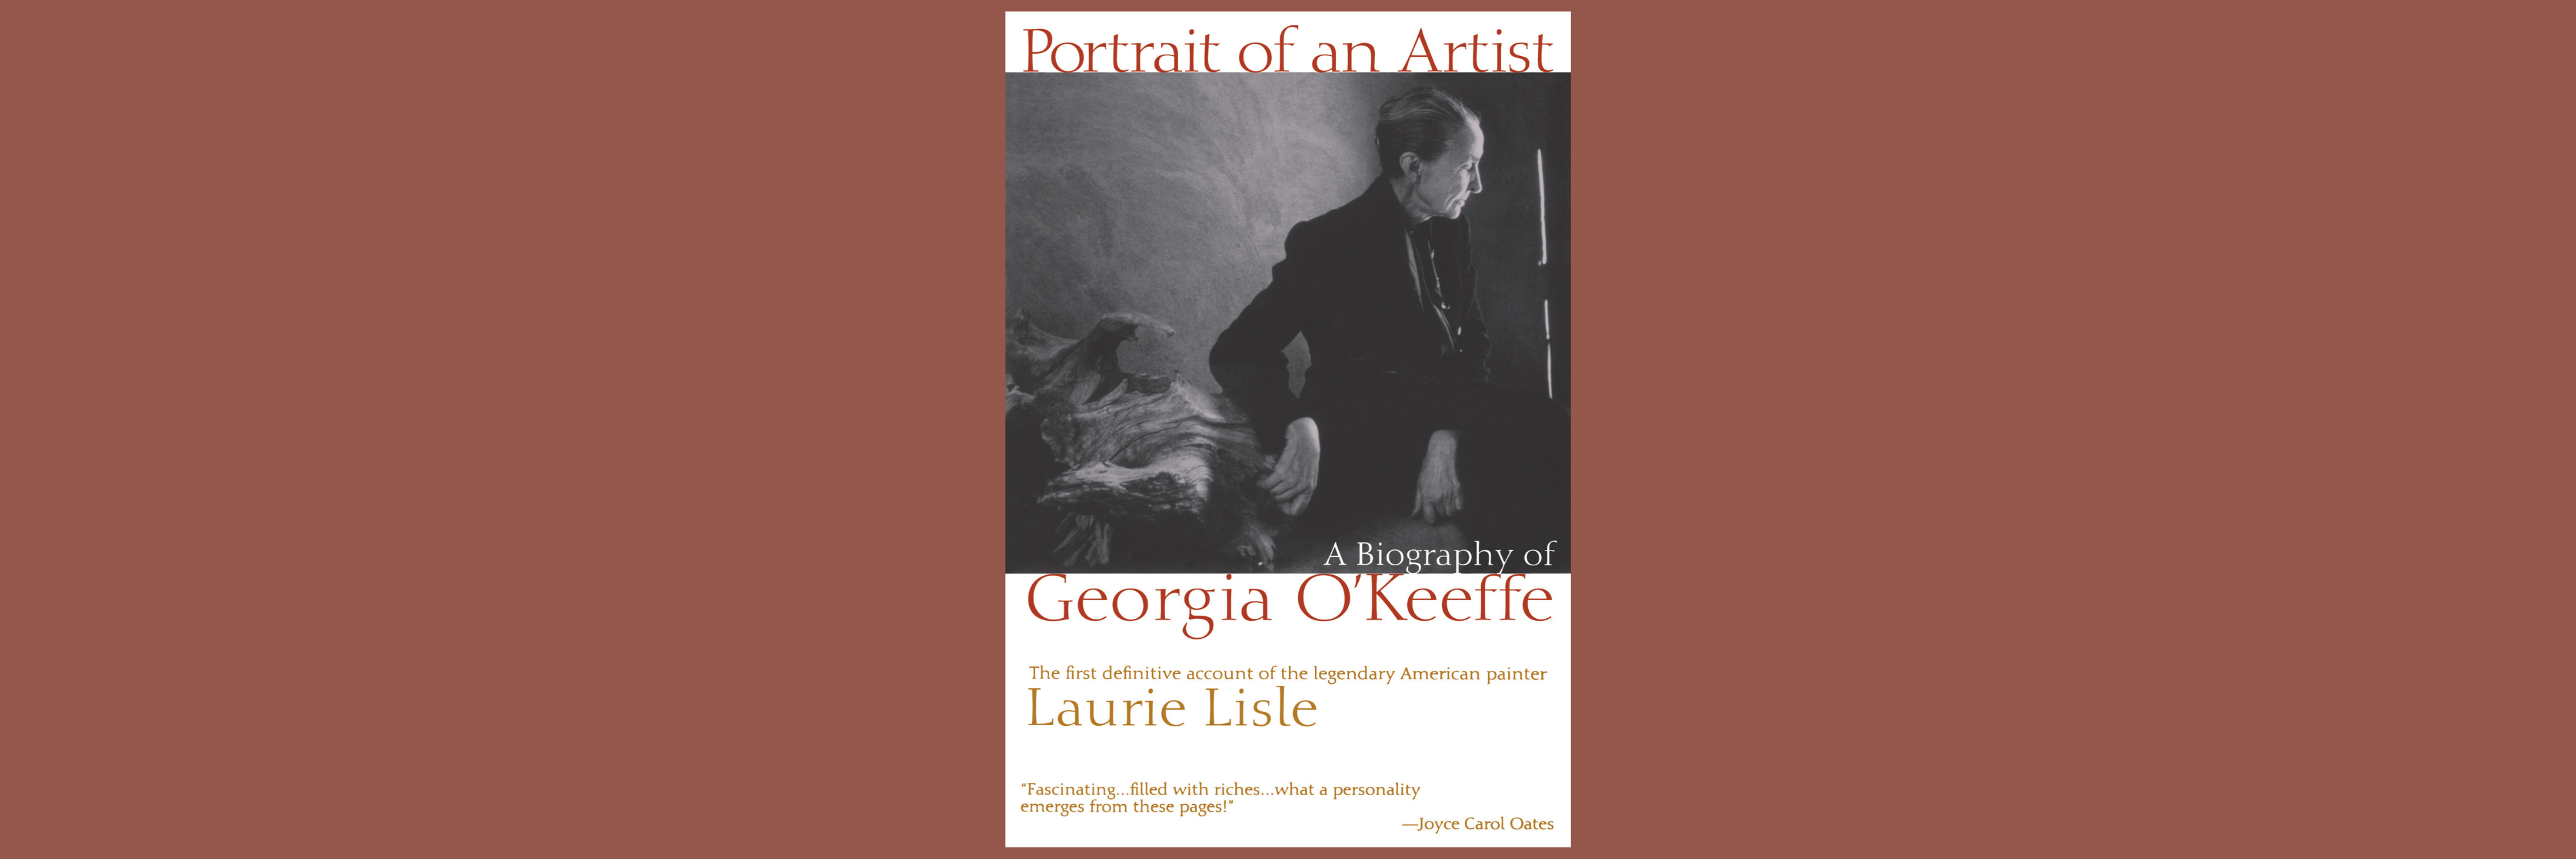 Portrait-of-An-Artist---O-Keeffe-Banner.png